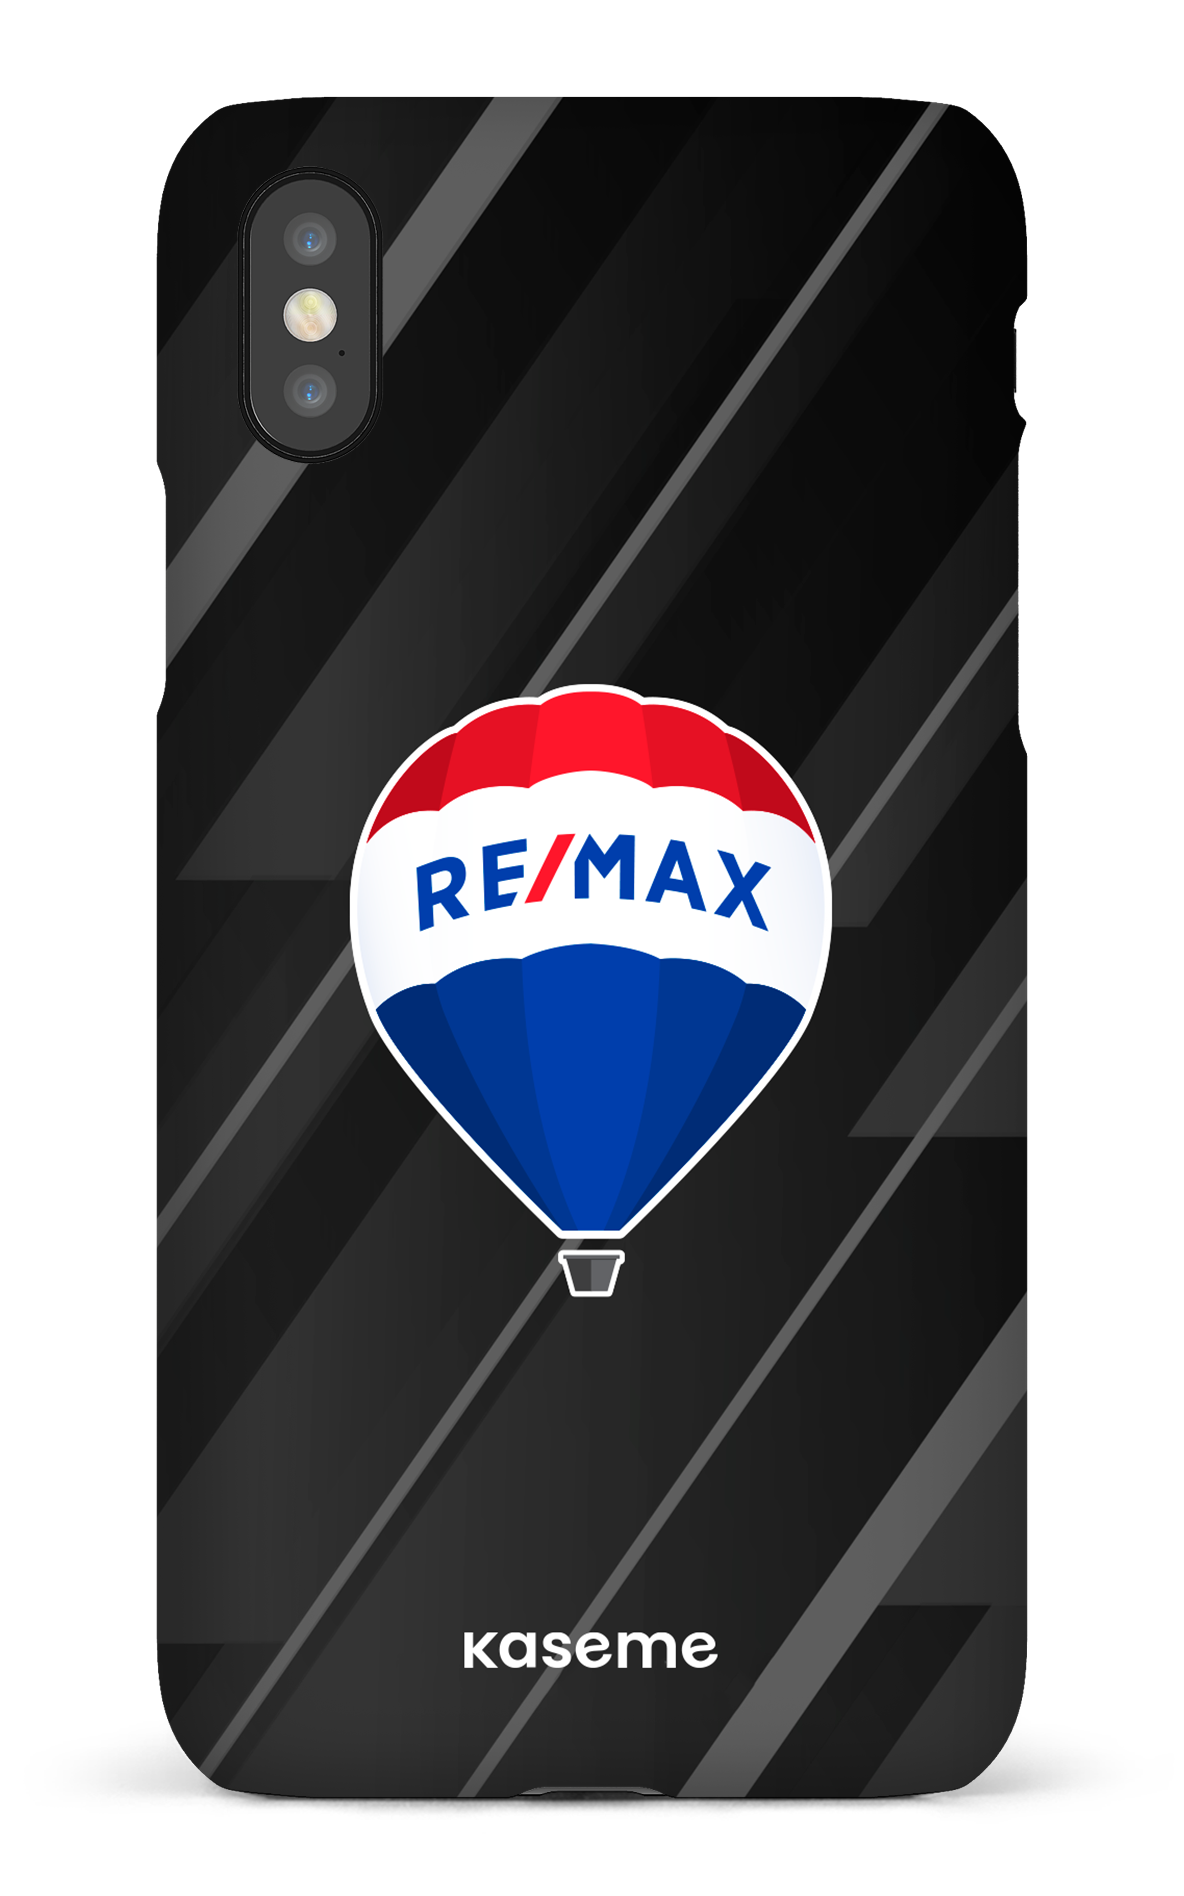 Remax Noir - iPhone X/Xs